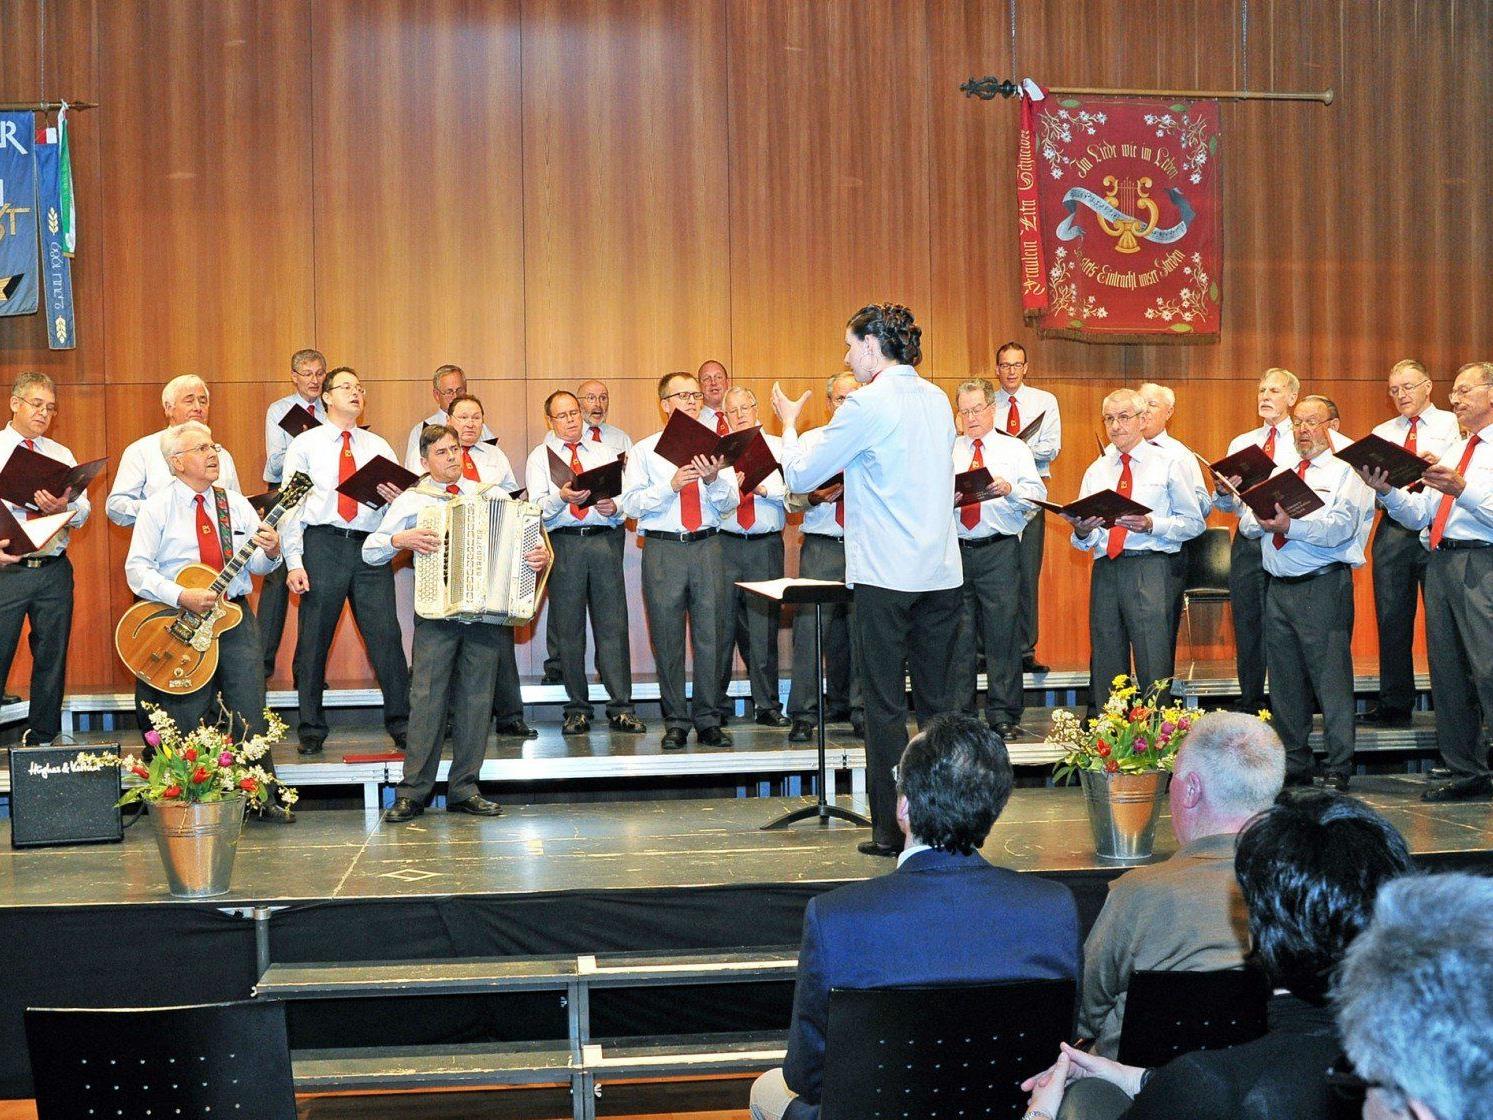 Der Männergesangverein Höchst lädt am 26. April zum Jubiläumskonzert in den Pfarrsaal ein.